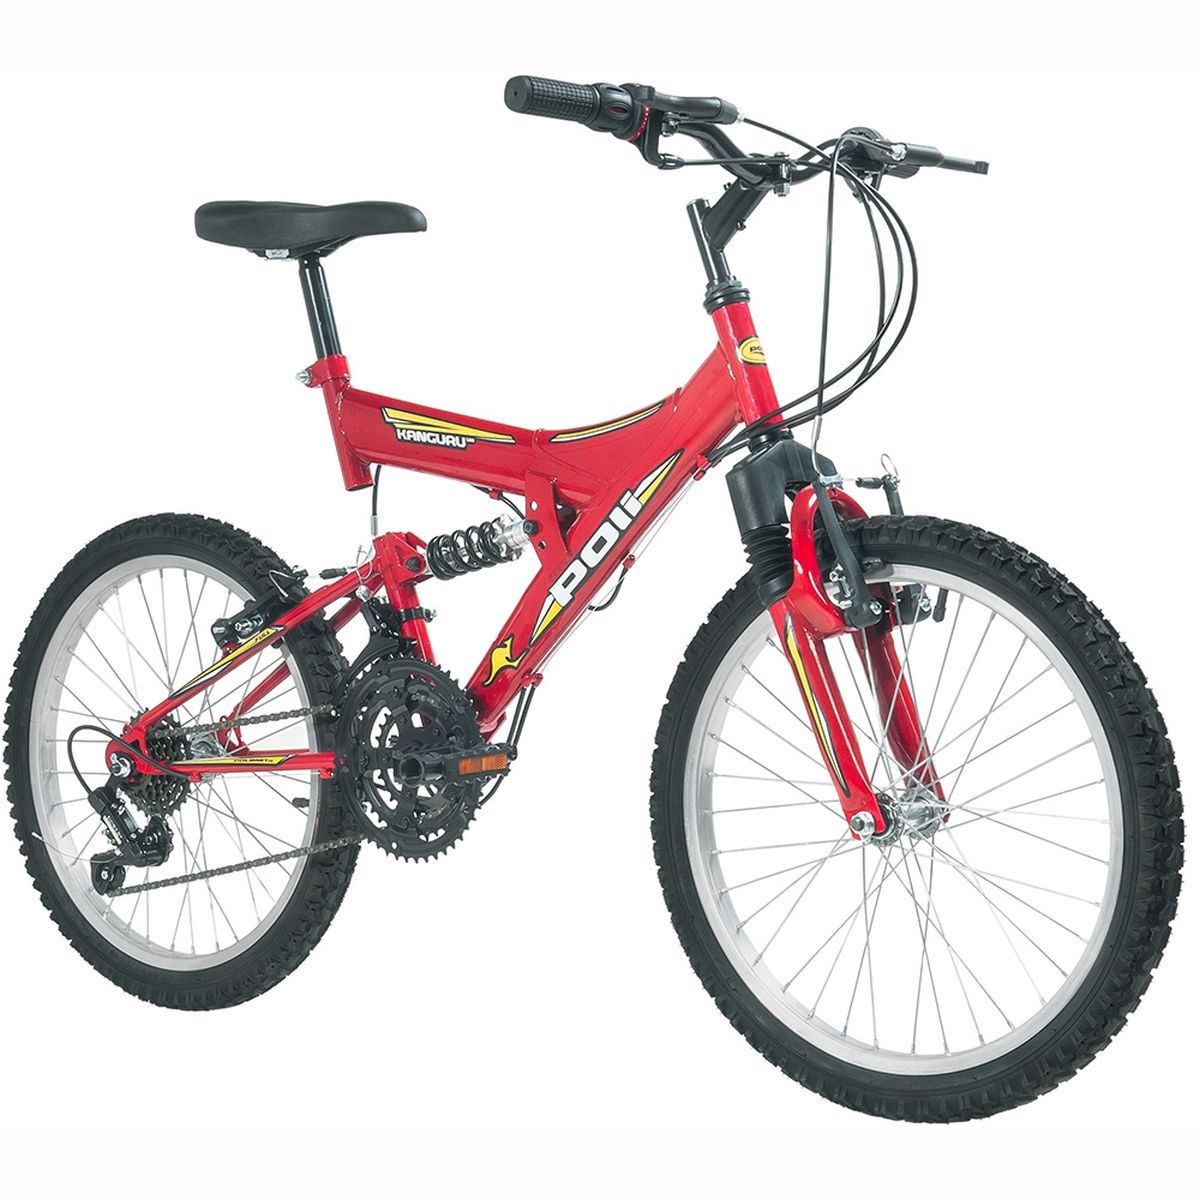 Bicicleta Polimet Kanguru Full Suspension Aro 20 V-brake Infantil 18v